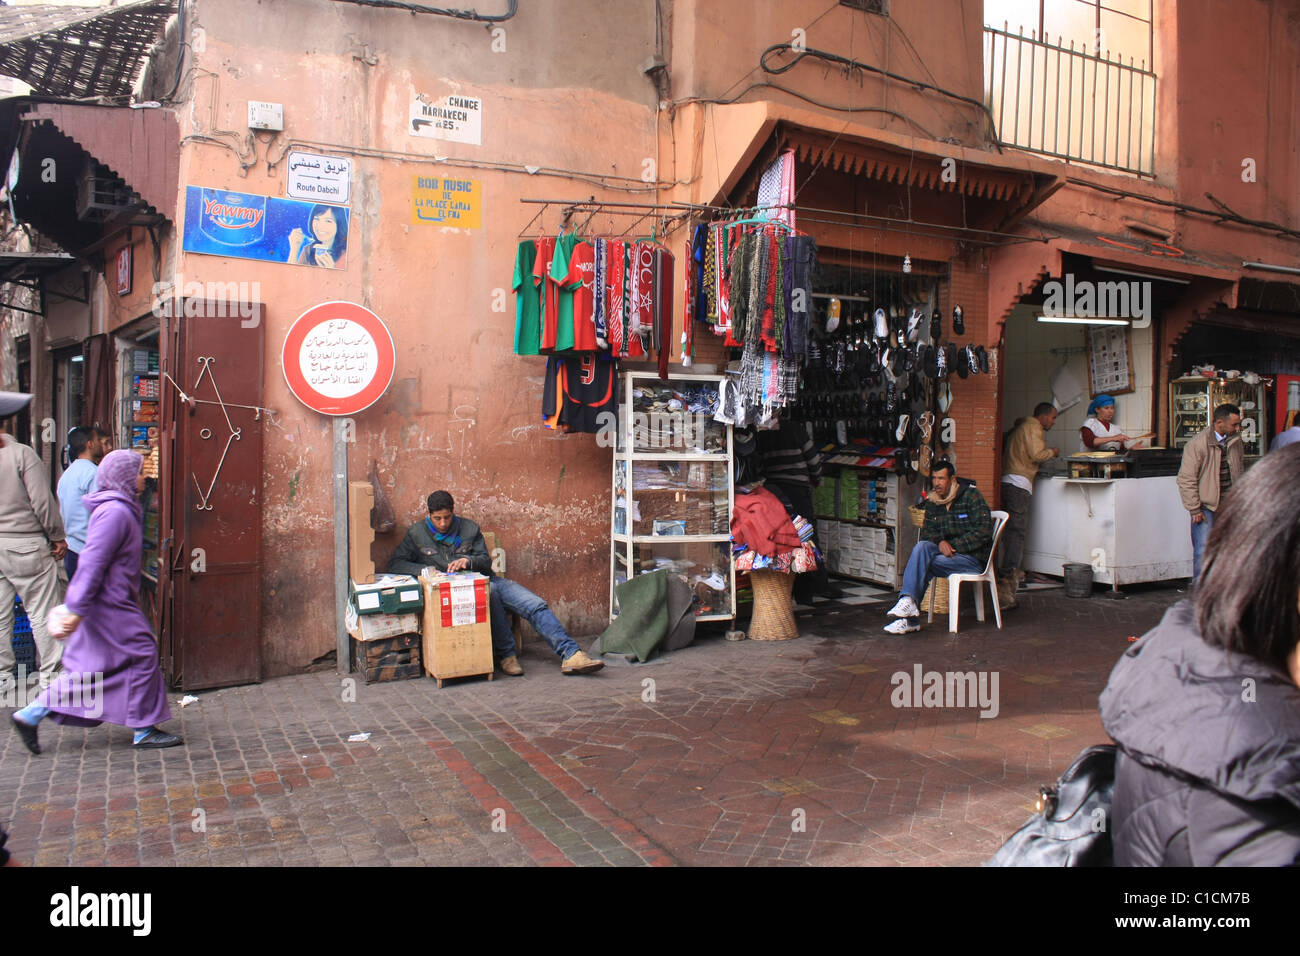 Scene in the souks in Marrakesh Stock Photo